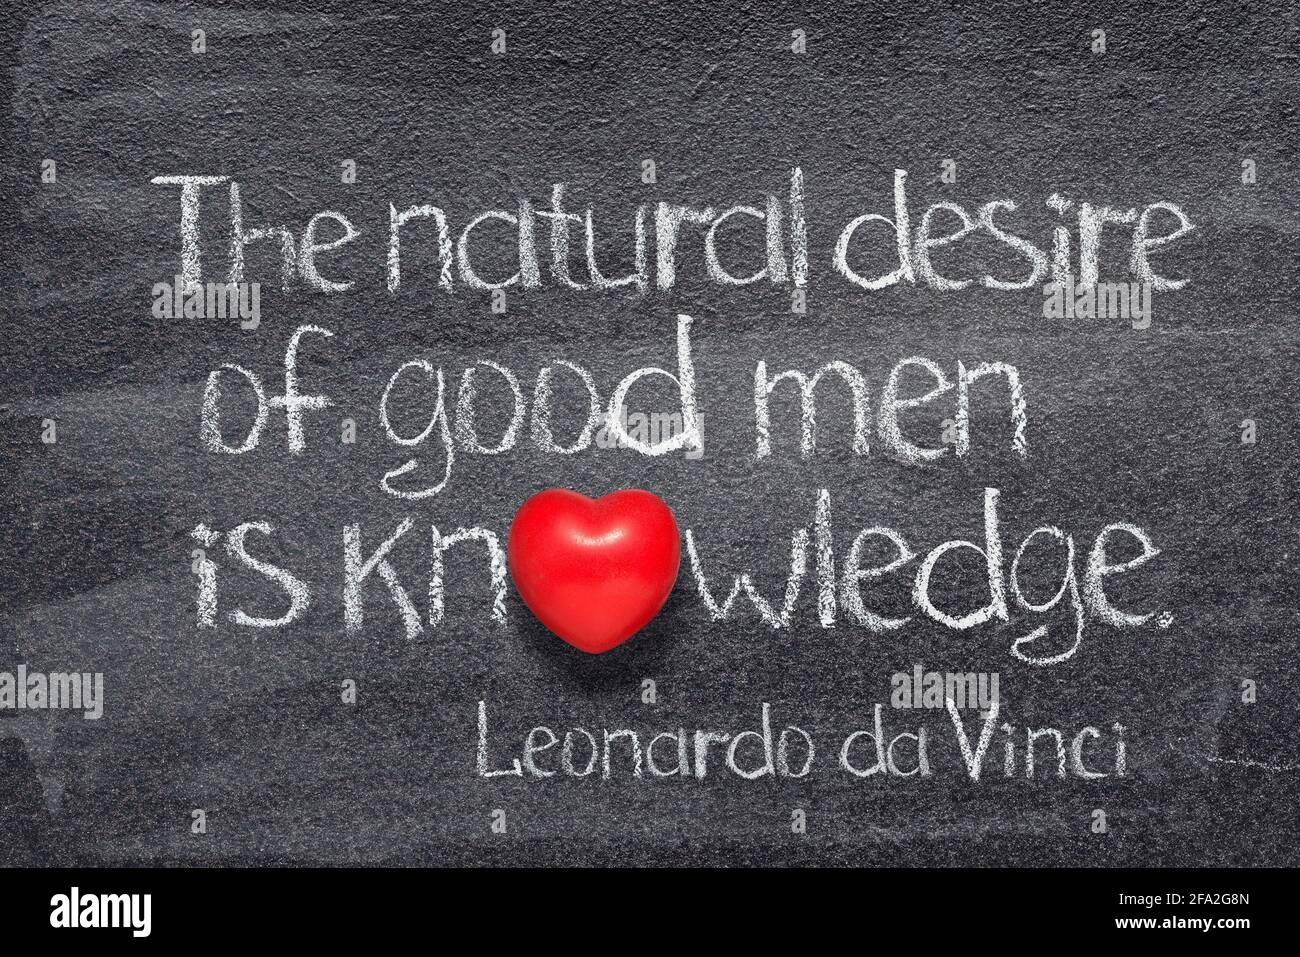 El deseo natural de los hombres buenos es el conocimiento - antiguo Artista italiano Leonardo da Vinci cita escrita en pizarra con símbolo de corazón rojo Foto de stock